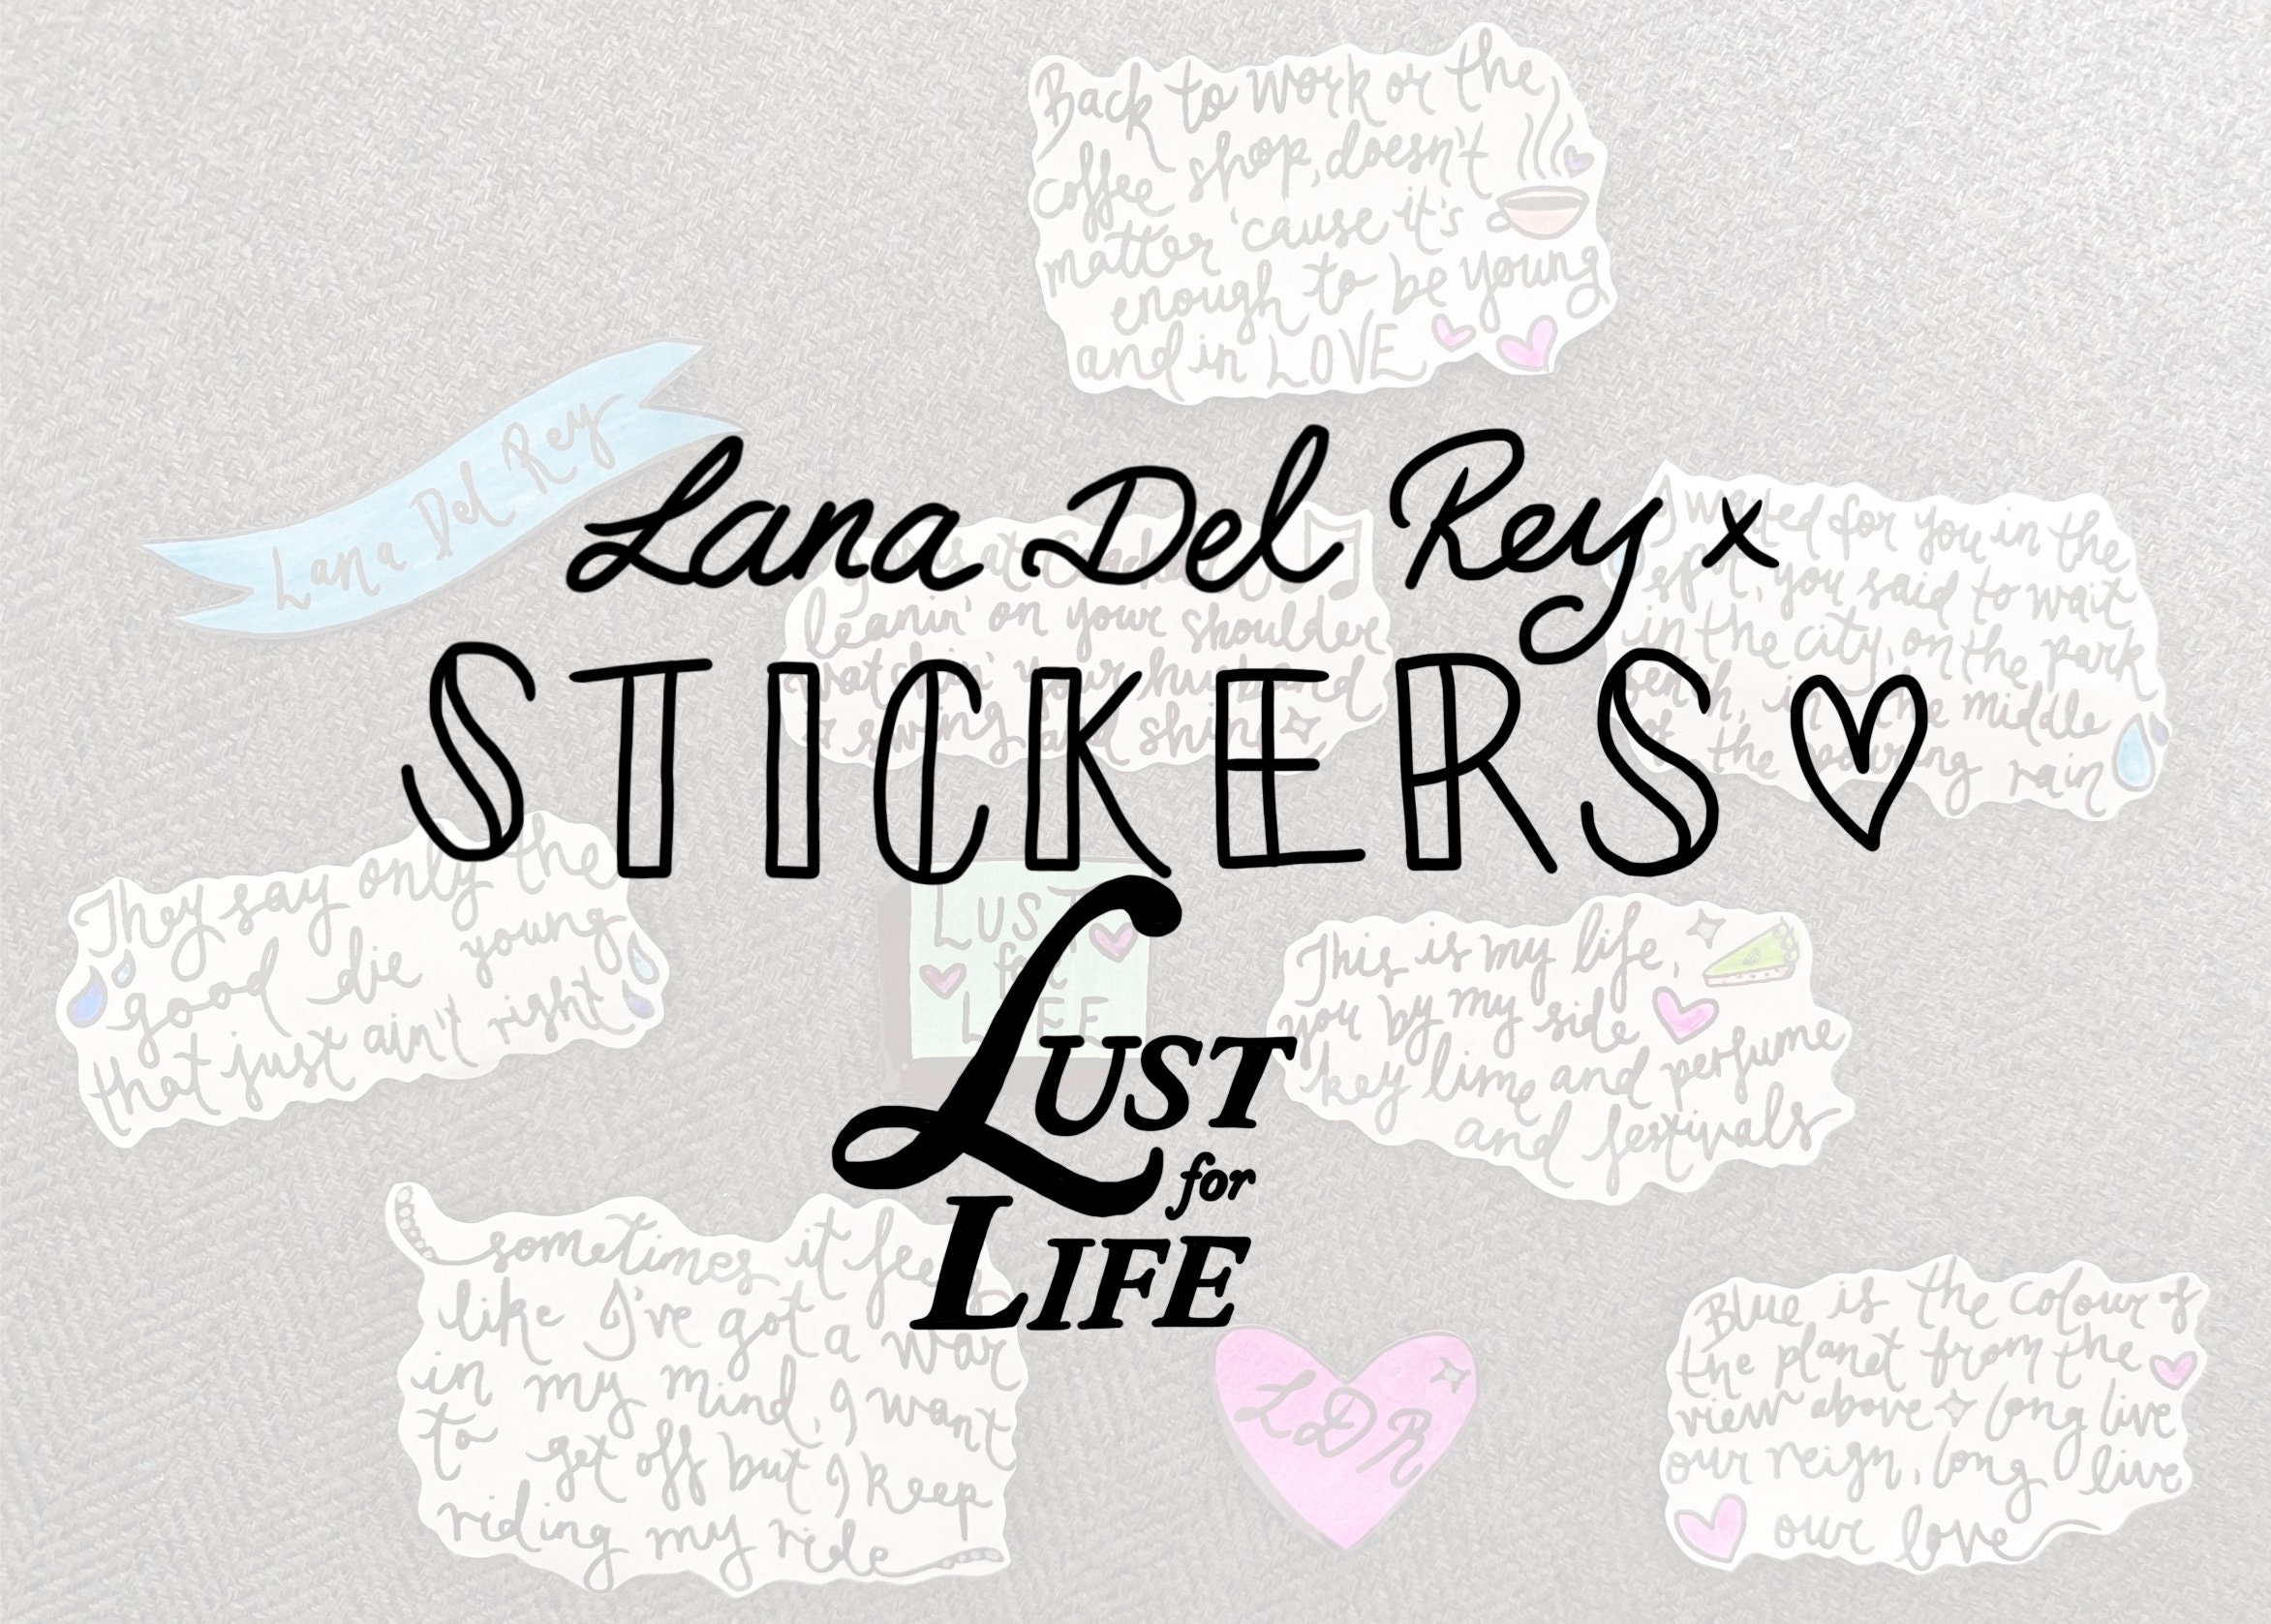 Lana del Rey Lust for Life Lyrics. Lana del Rey Lust for Life альбом. Наклейки тексты из песен.